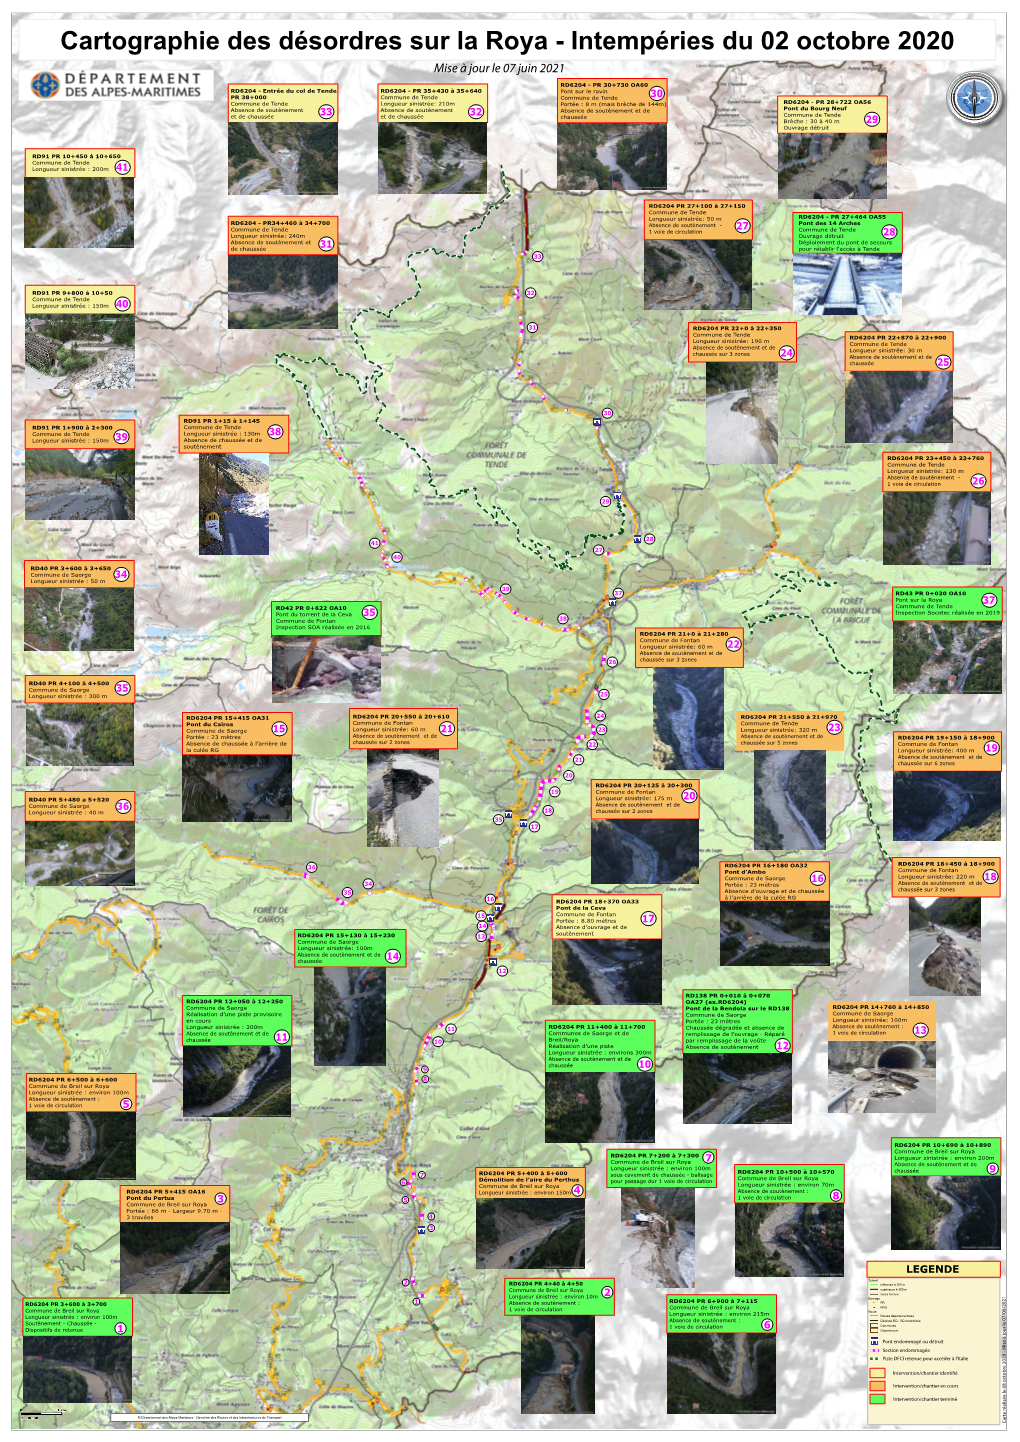 Cartographie Des Désordres Sur La Roya - Intempéries Du 02 Octobre 2020 Mise À Jour Le 07 Juin 2021